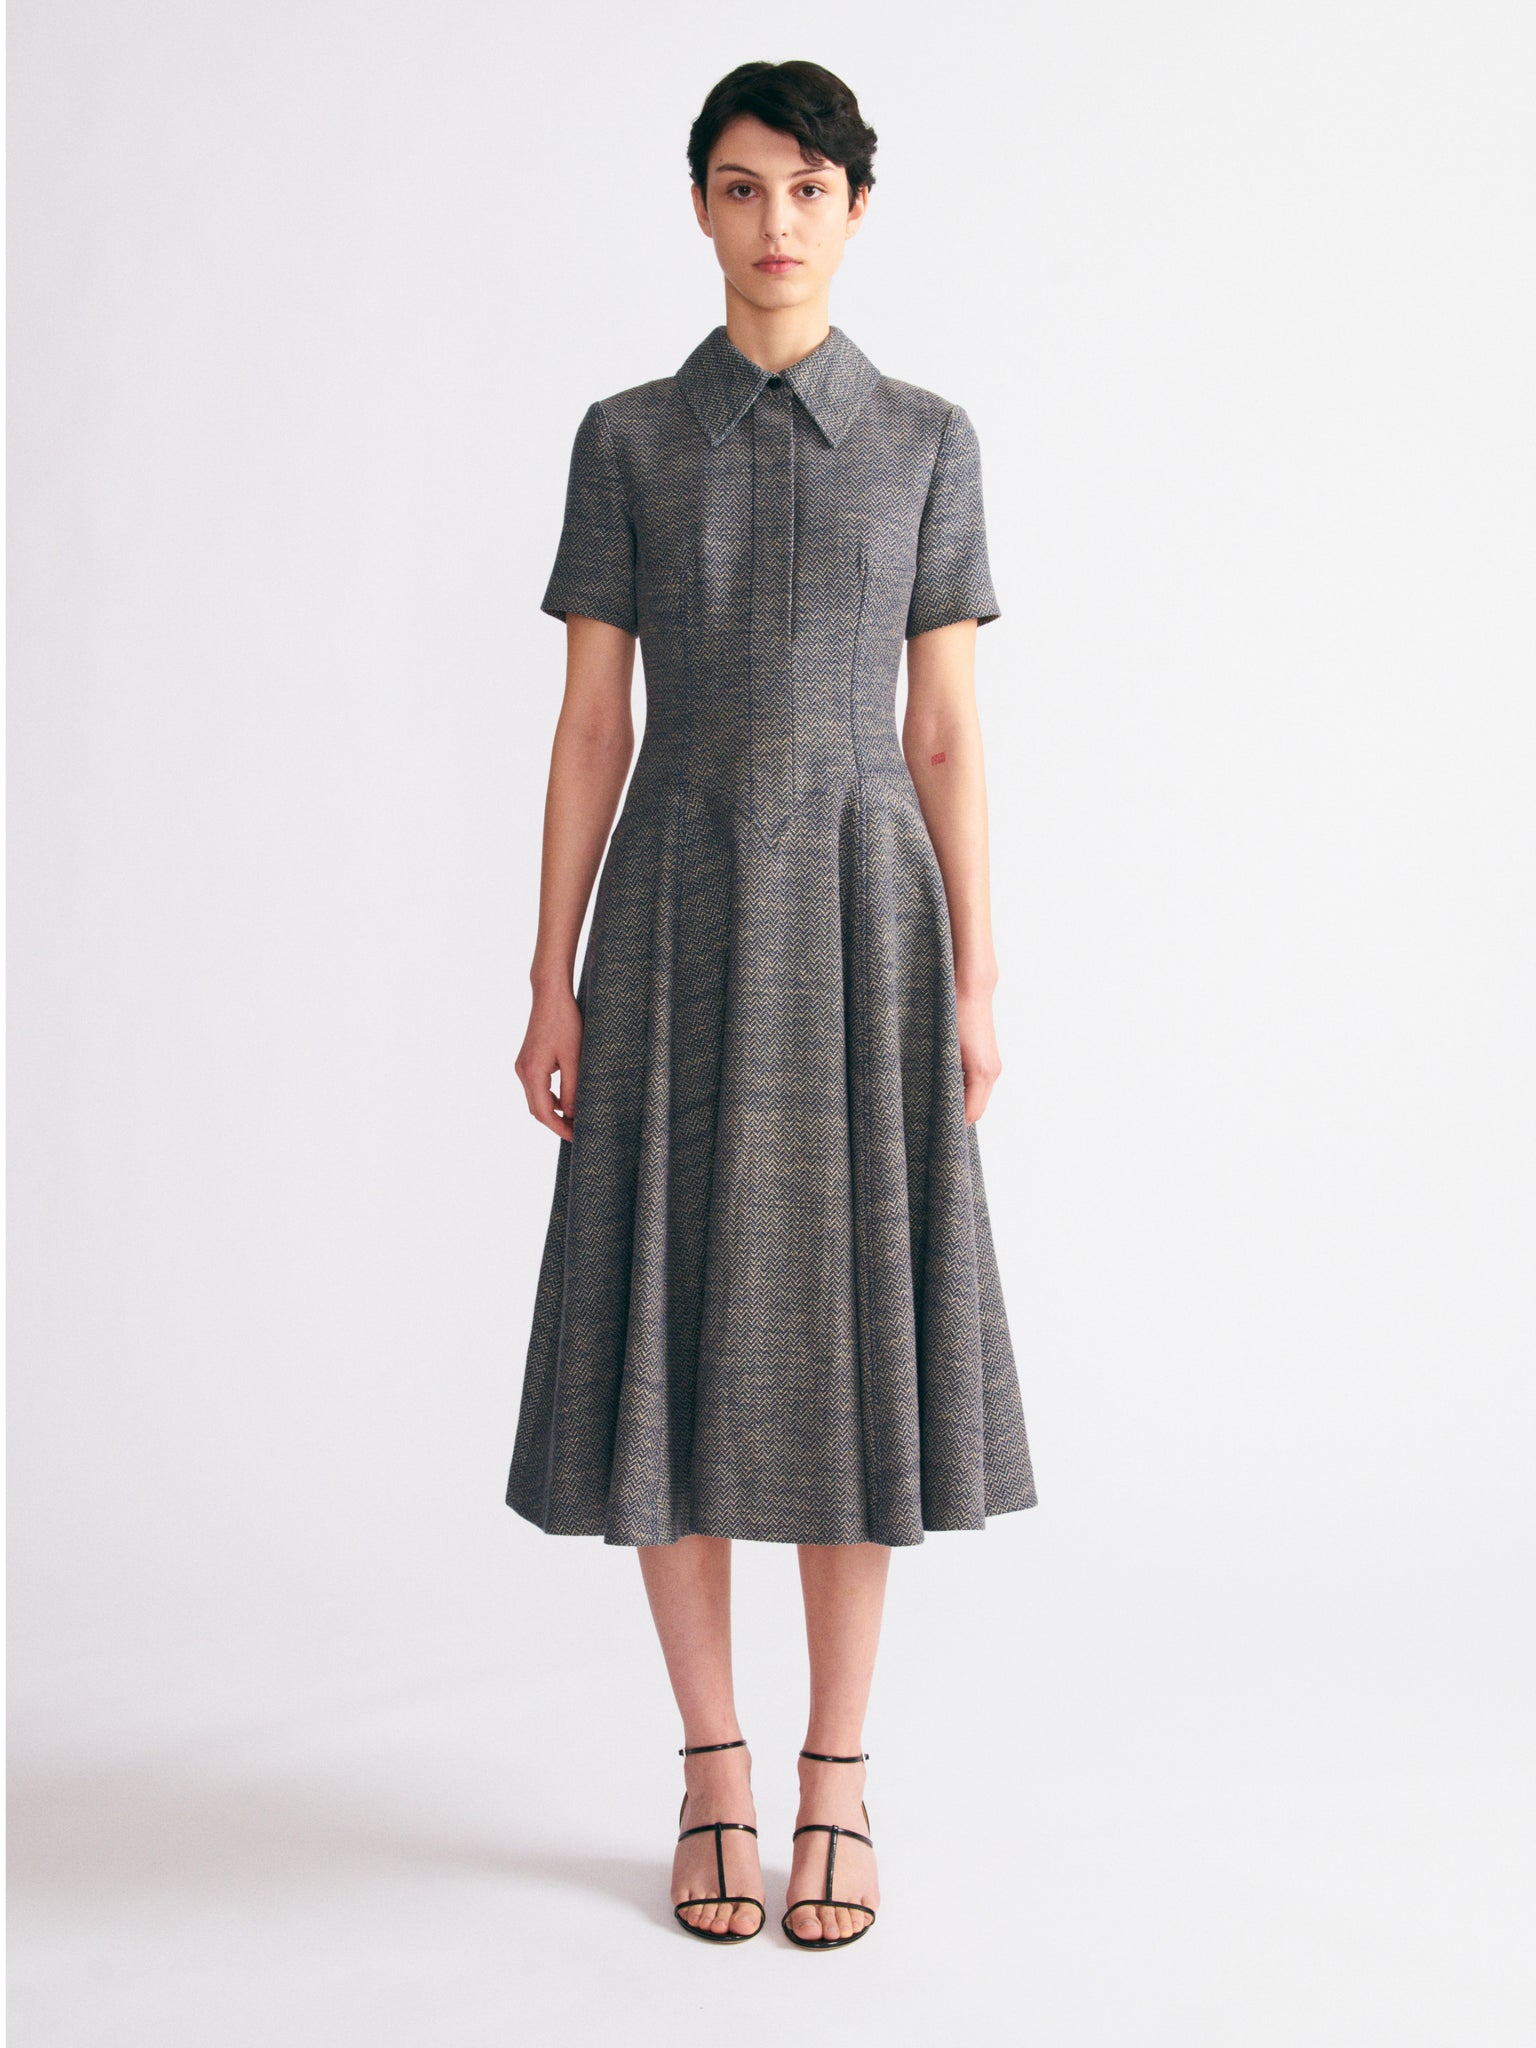 Jody Dress In Navy & Ivory Chevron Weave | Emilia Wickstead